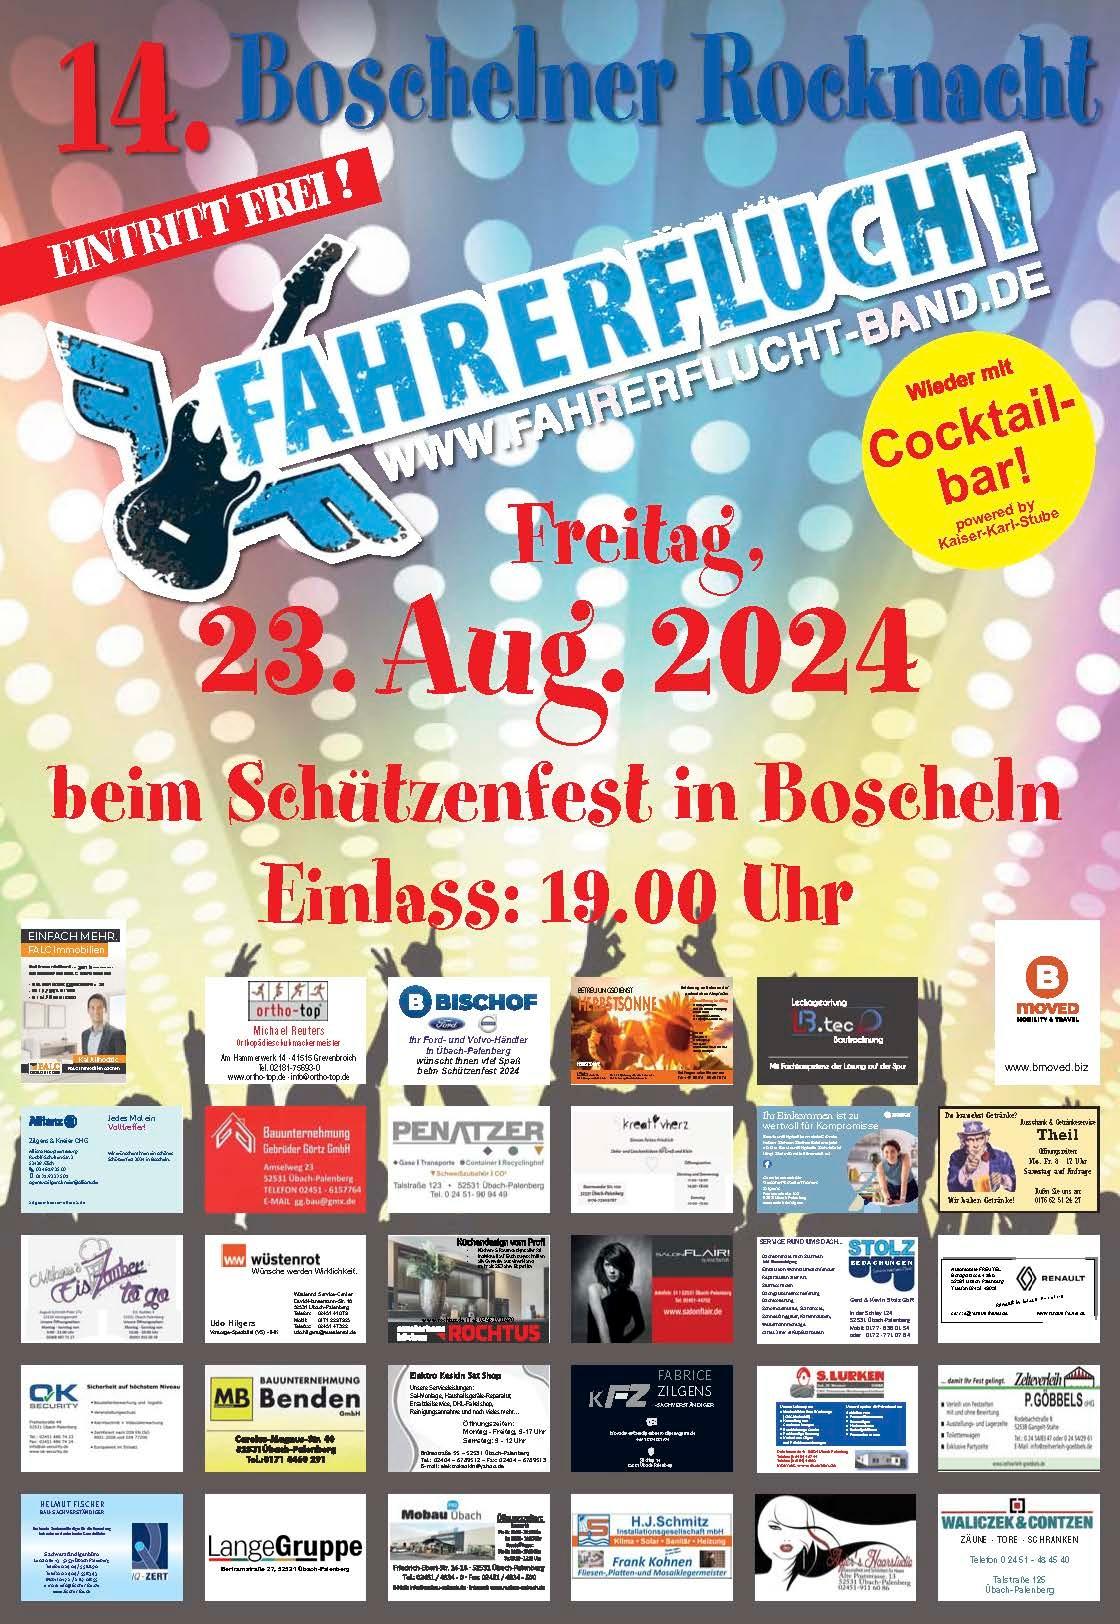 Rocknacht - Boschelner Schuetzenfest (c) M